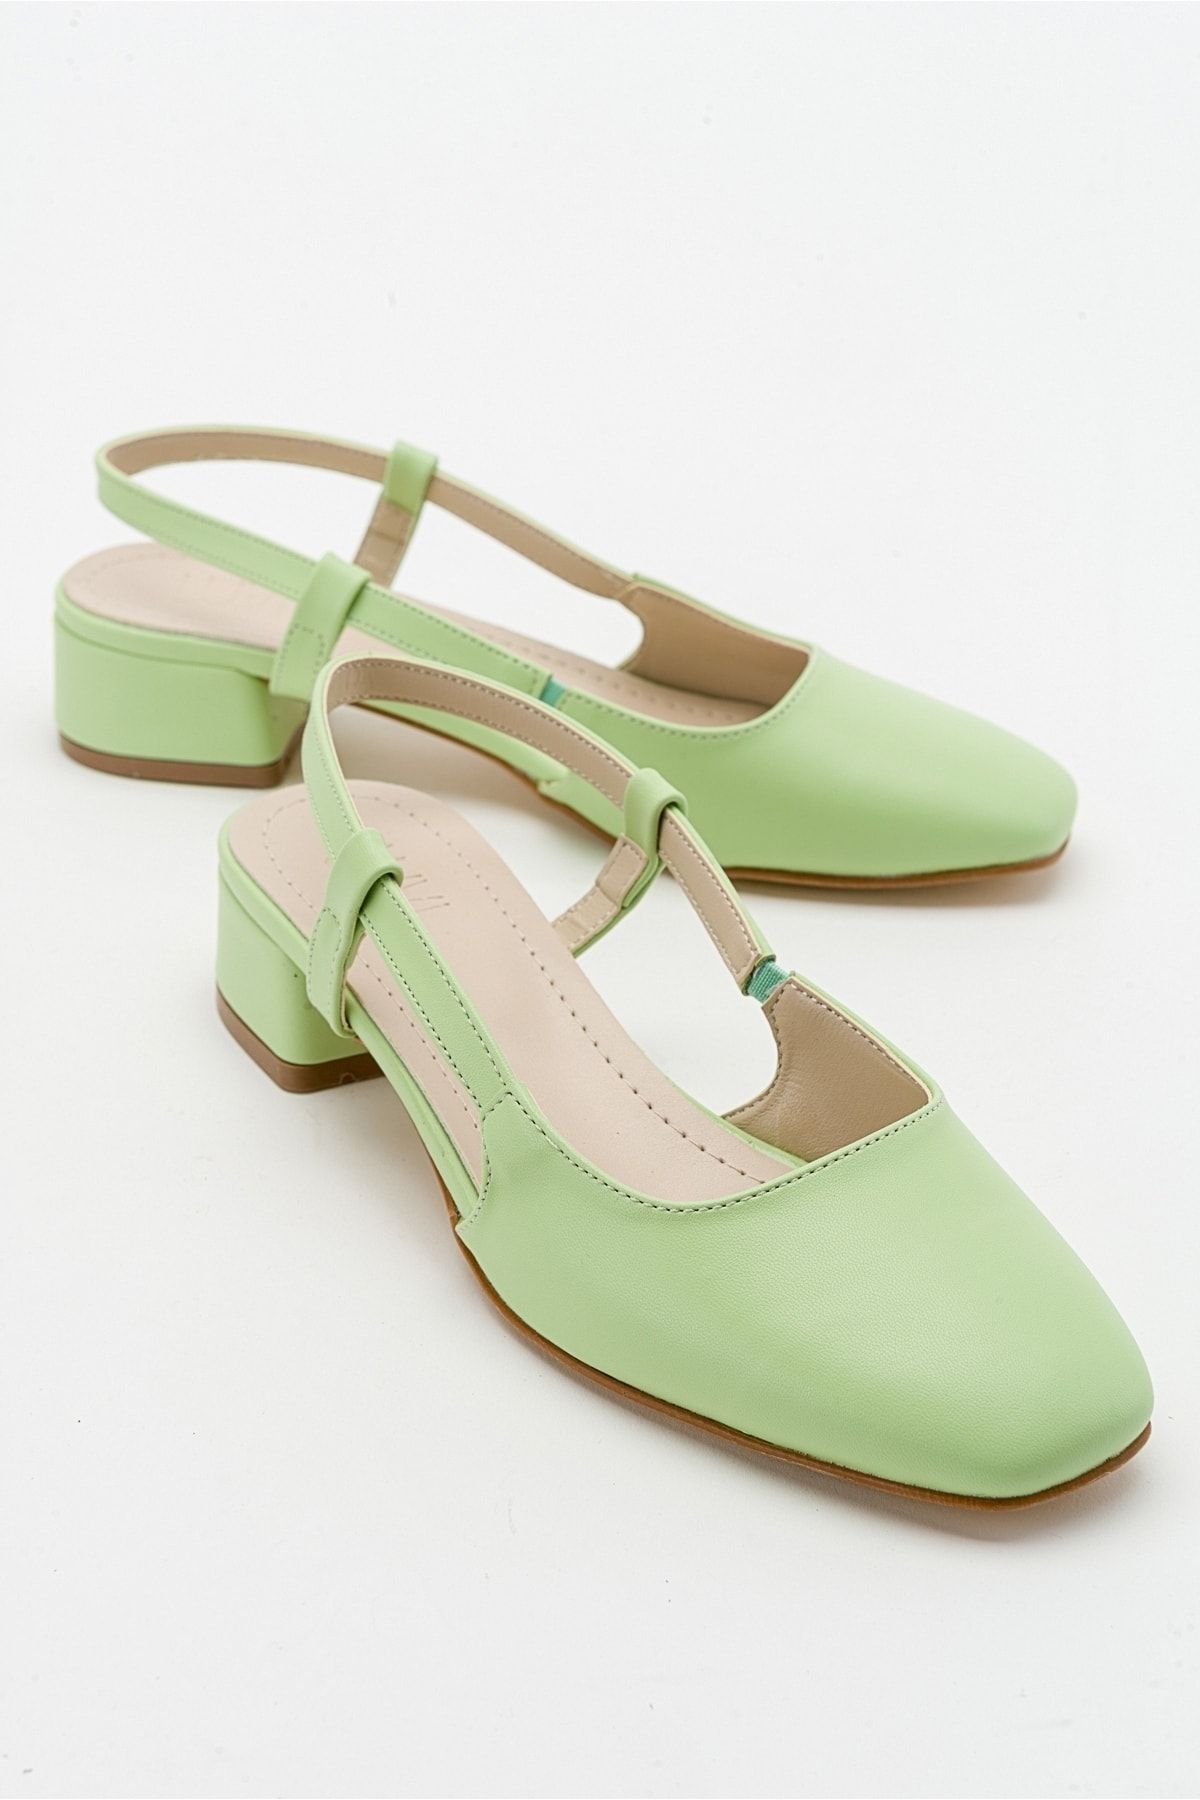 luvishoes 66 Fıstık Yeşili Cilt Kadın Topuklu Sandalet